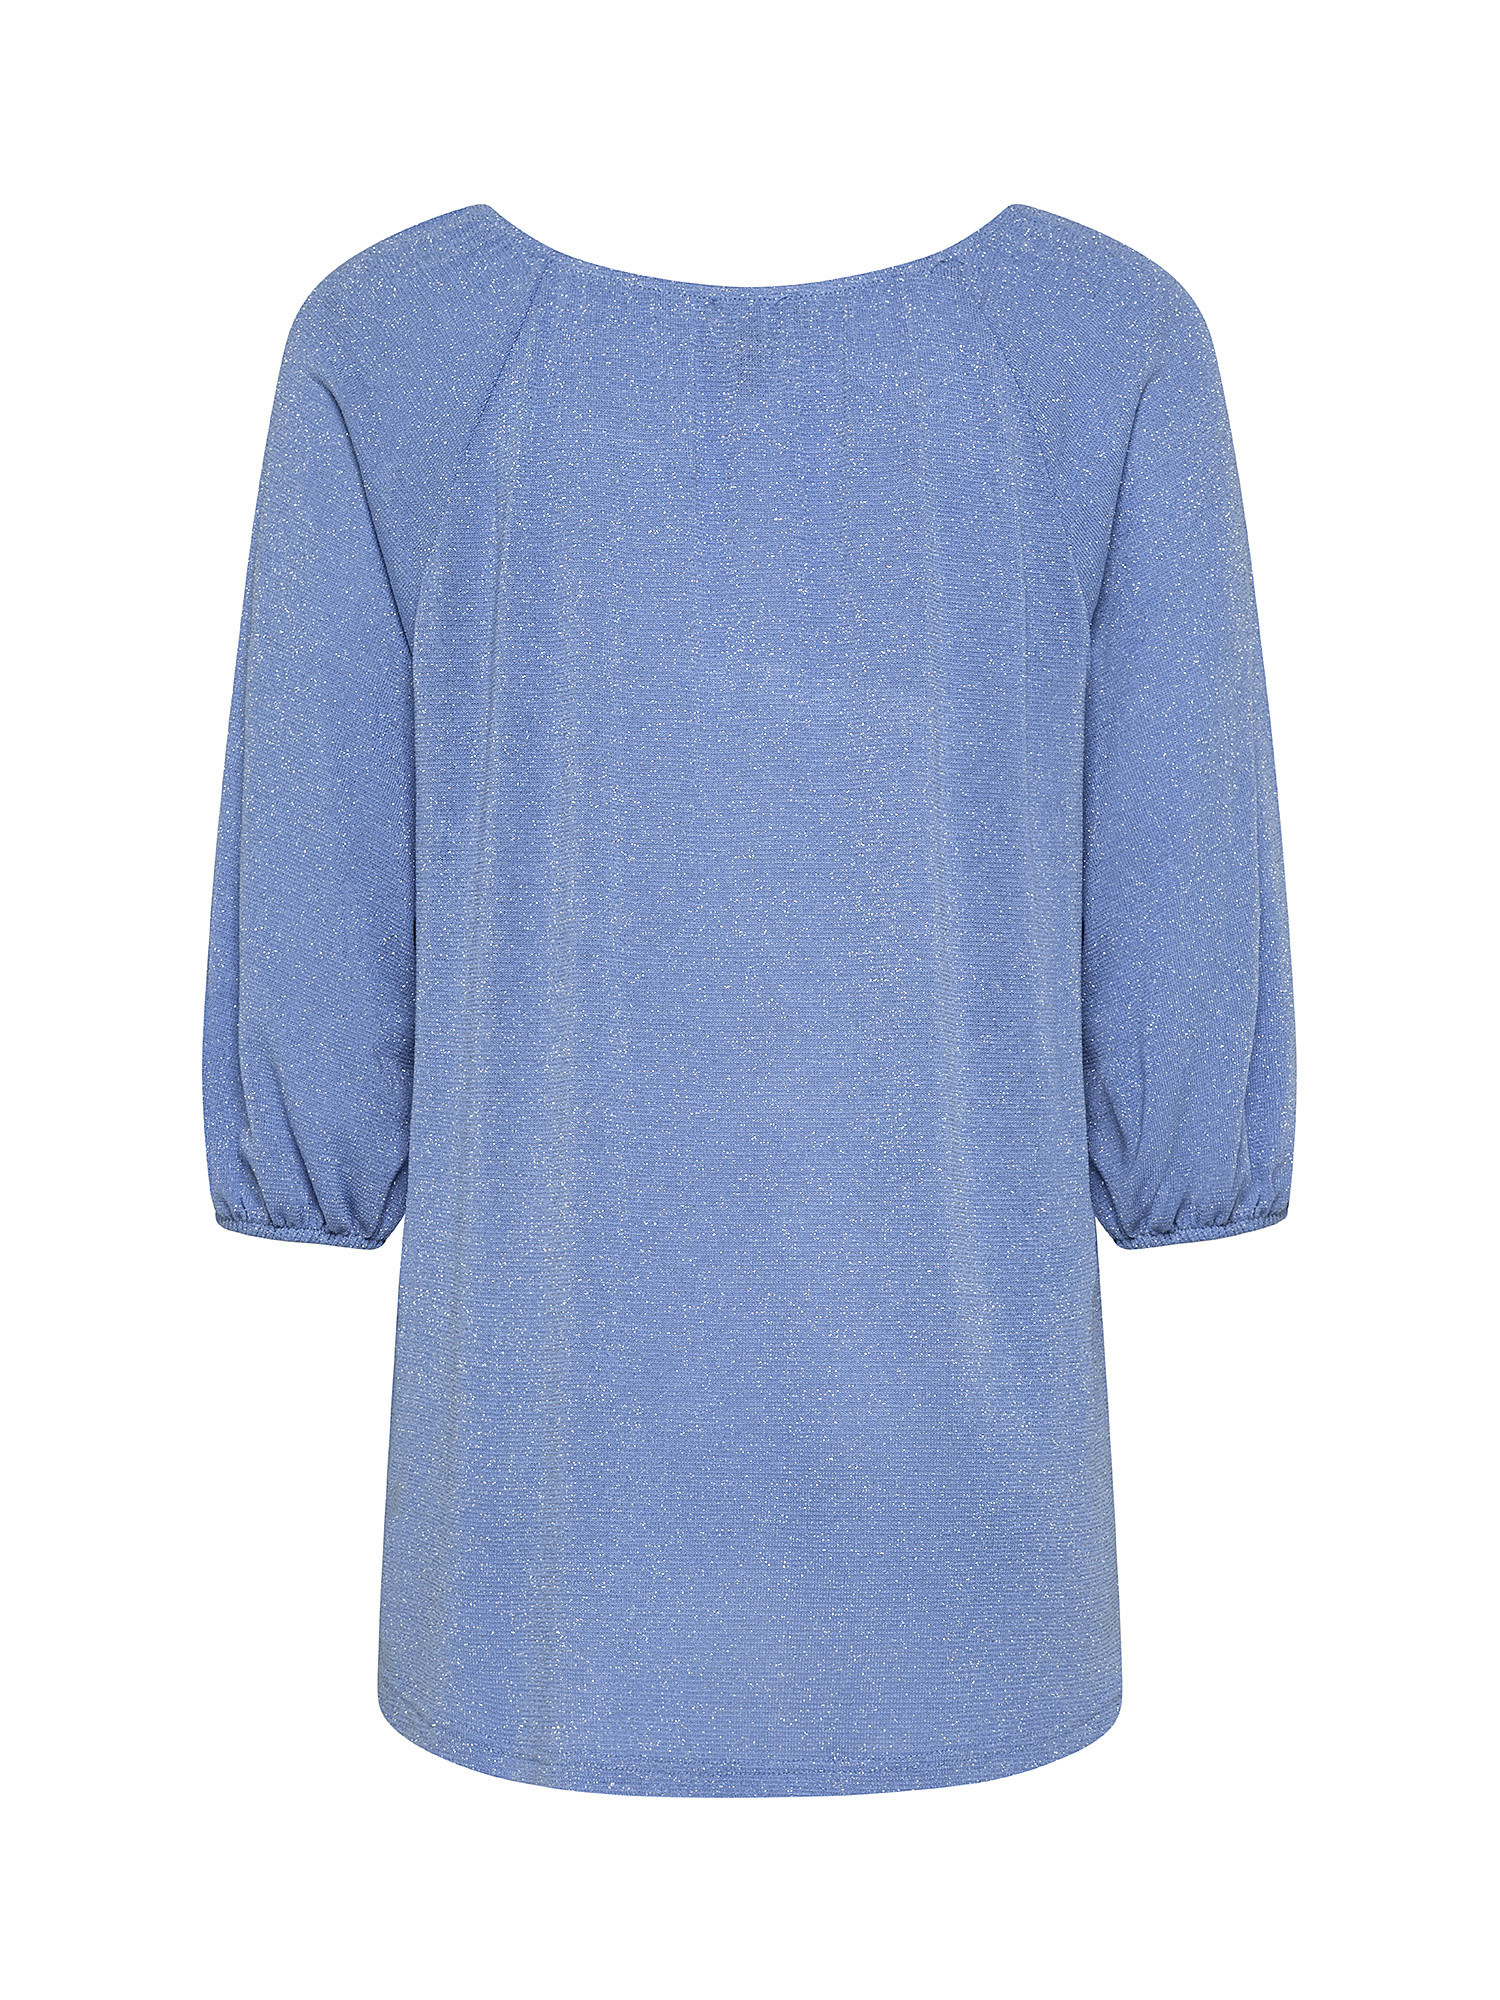 Raglan sleeve T-shirt, Blue Celeste, large image number 1